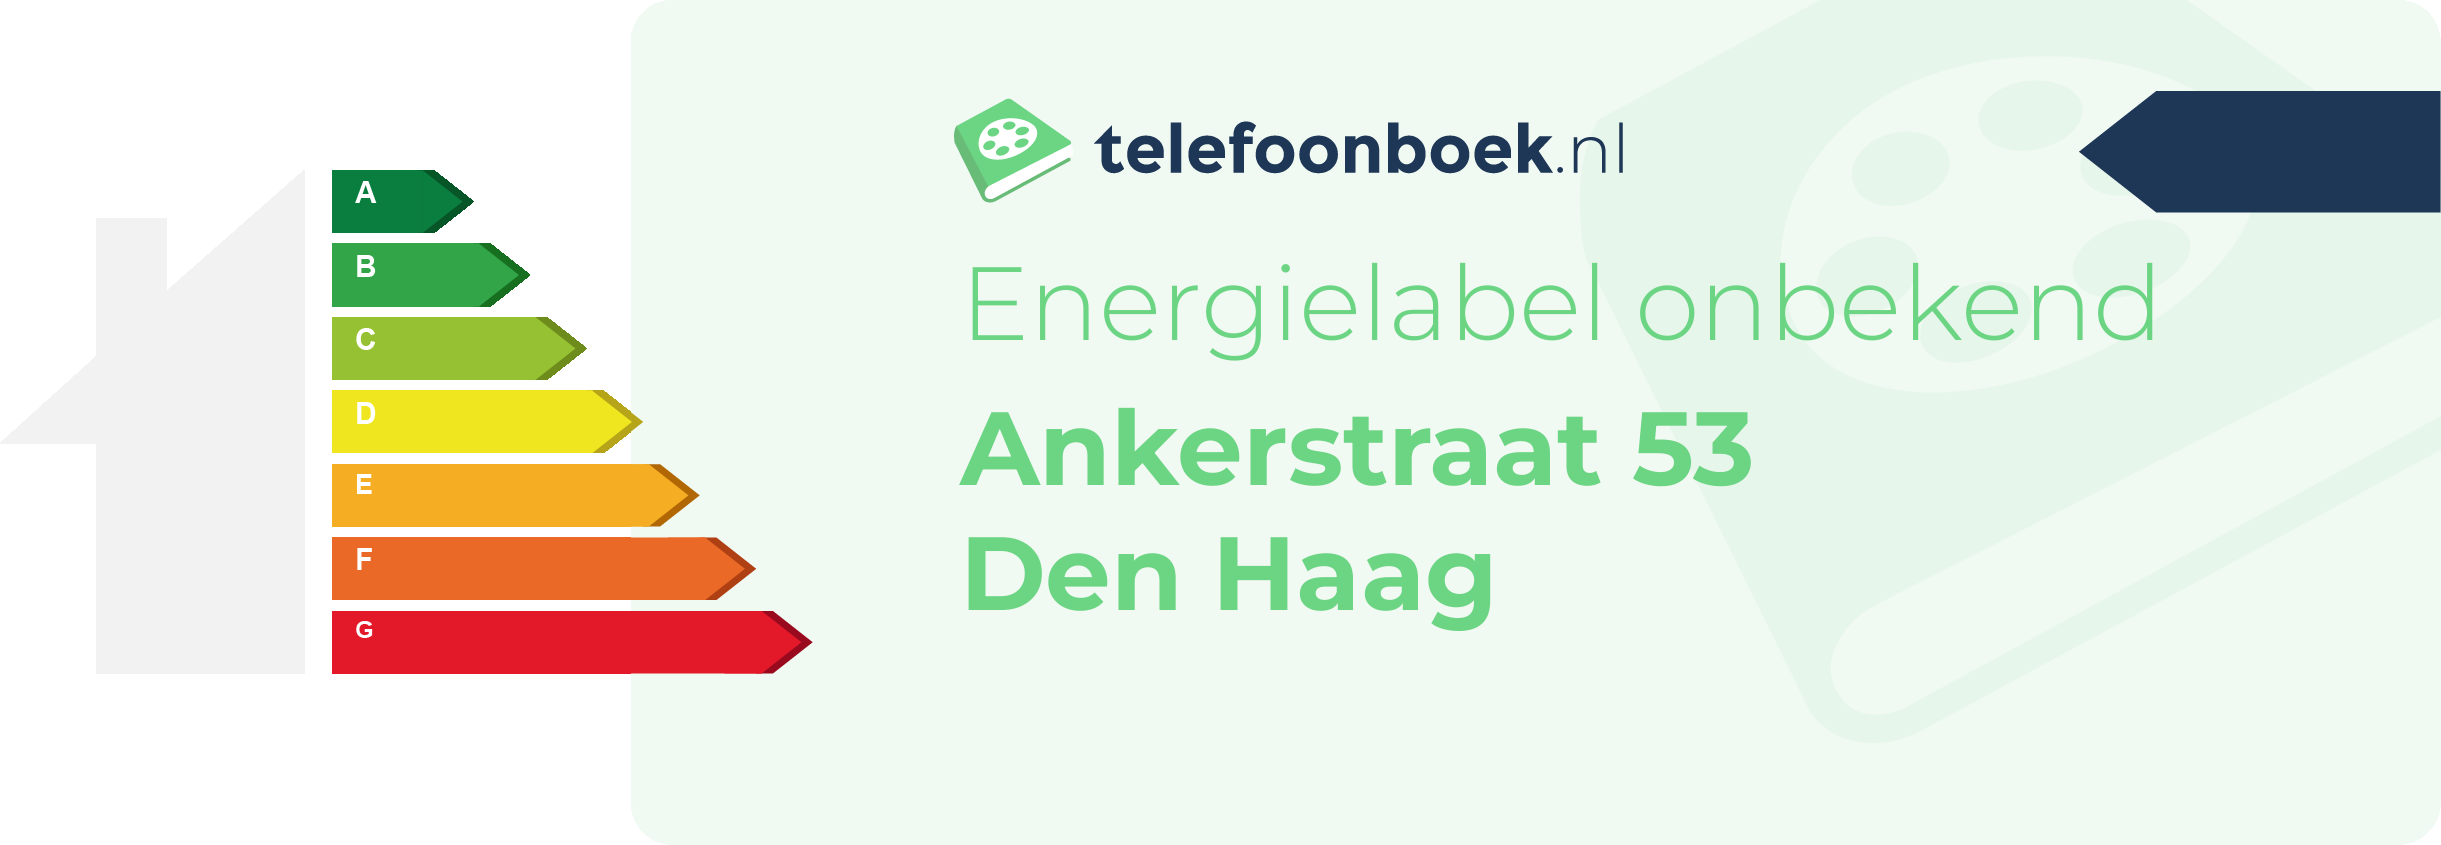 Energielabel Ankerstraat 53 Den Haag